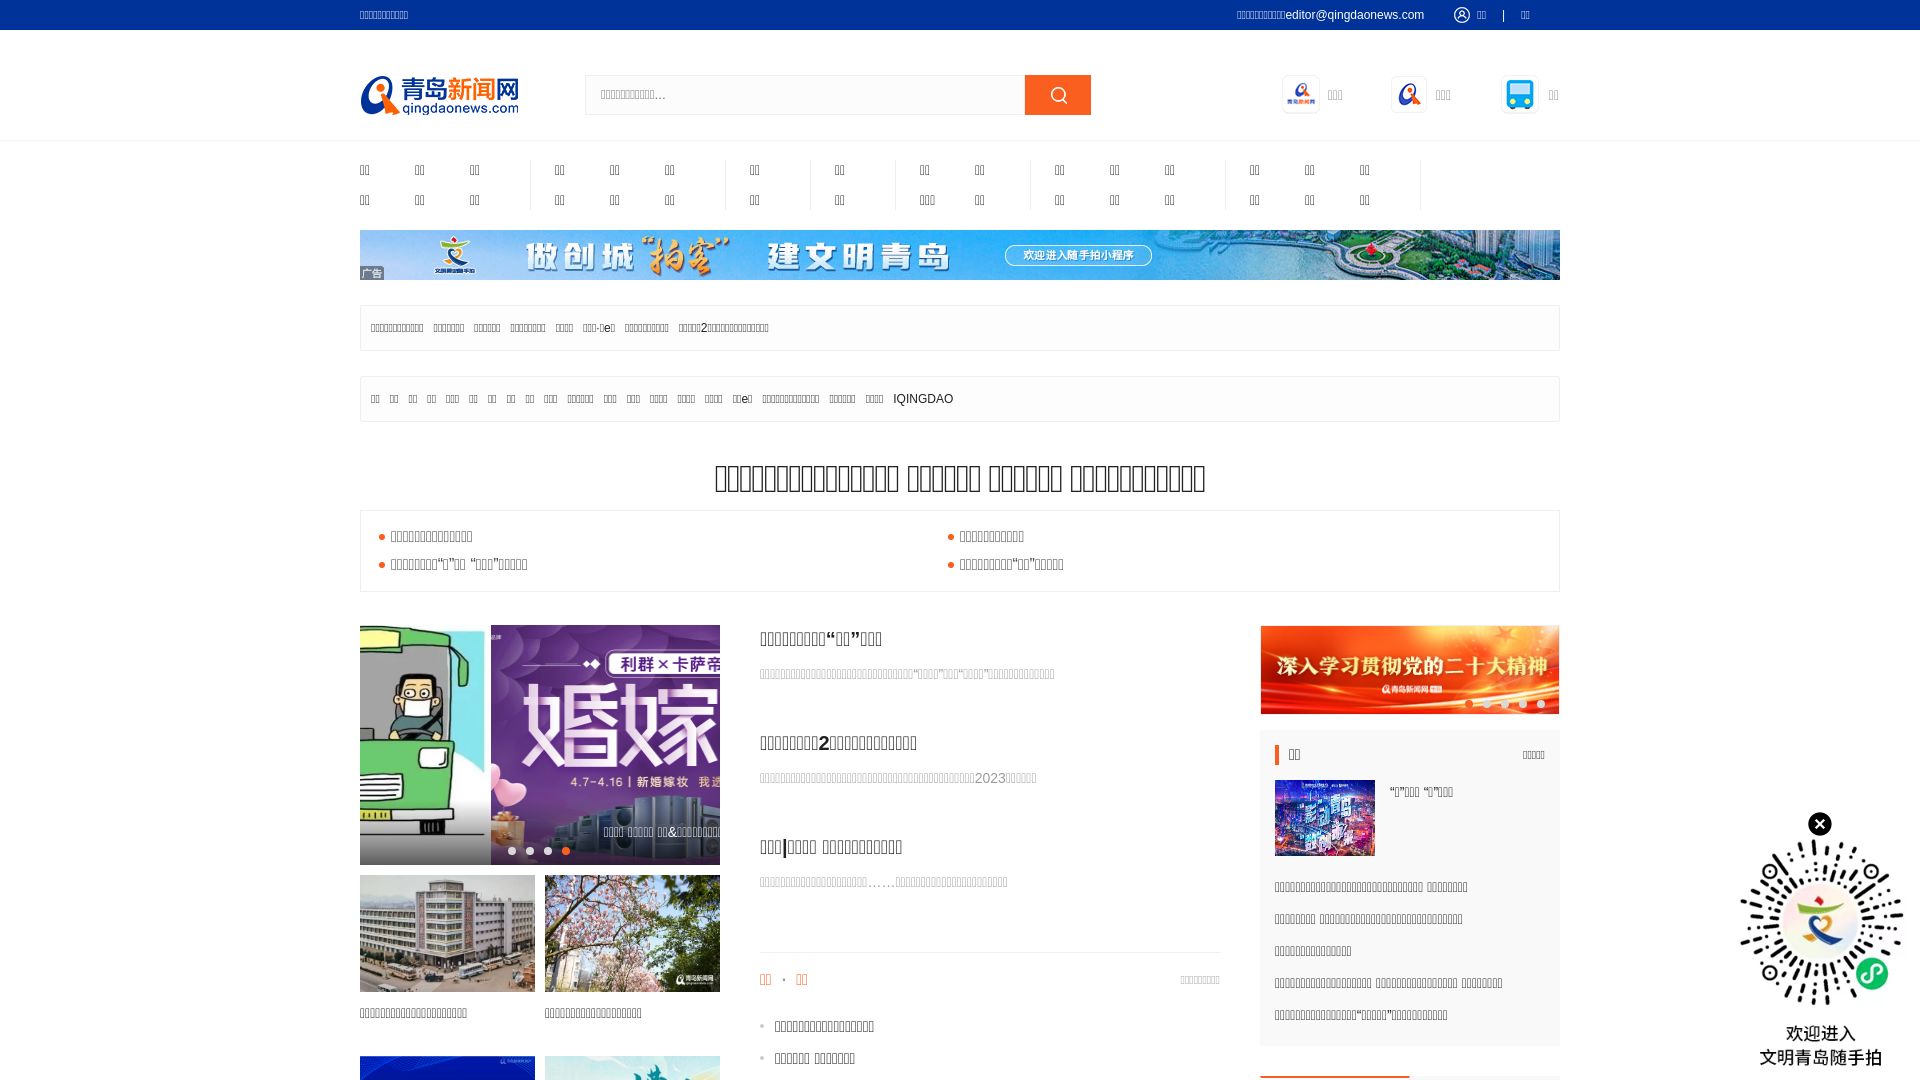 Website status qingdaonews.com is   ONLINE